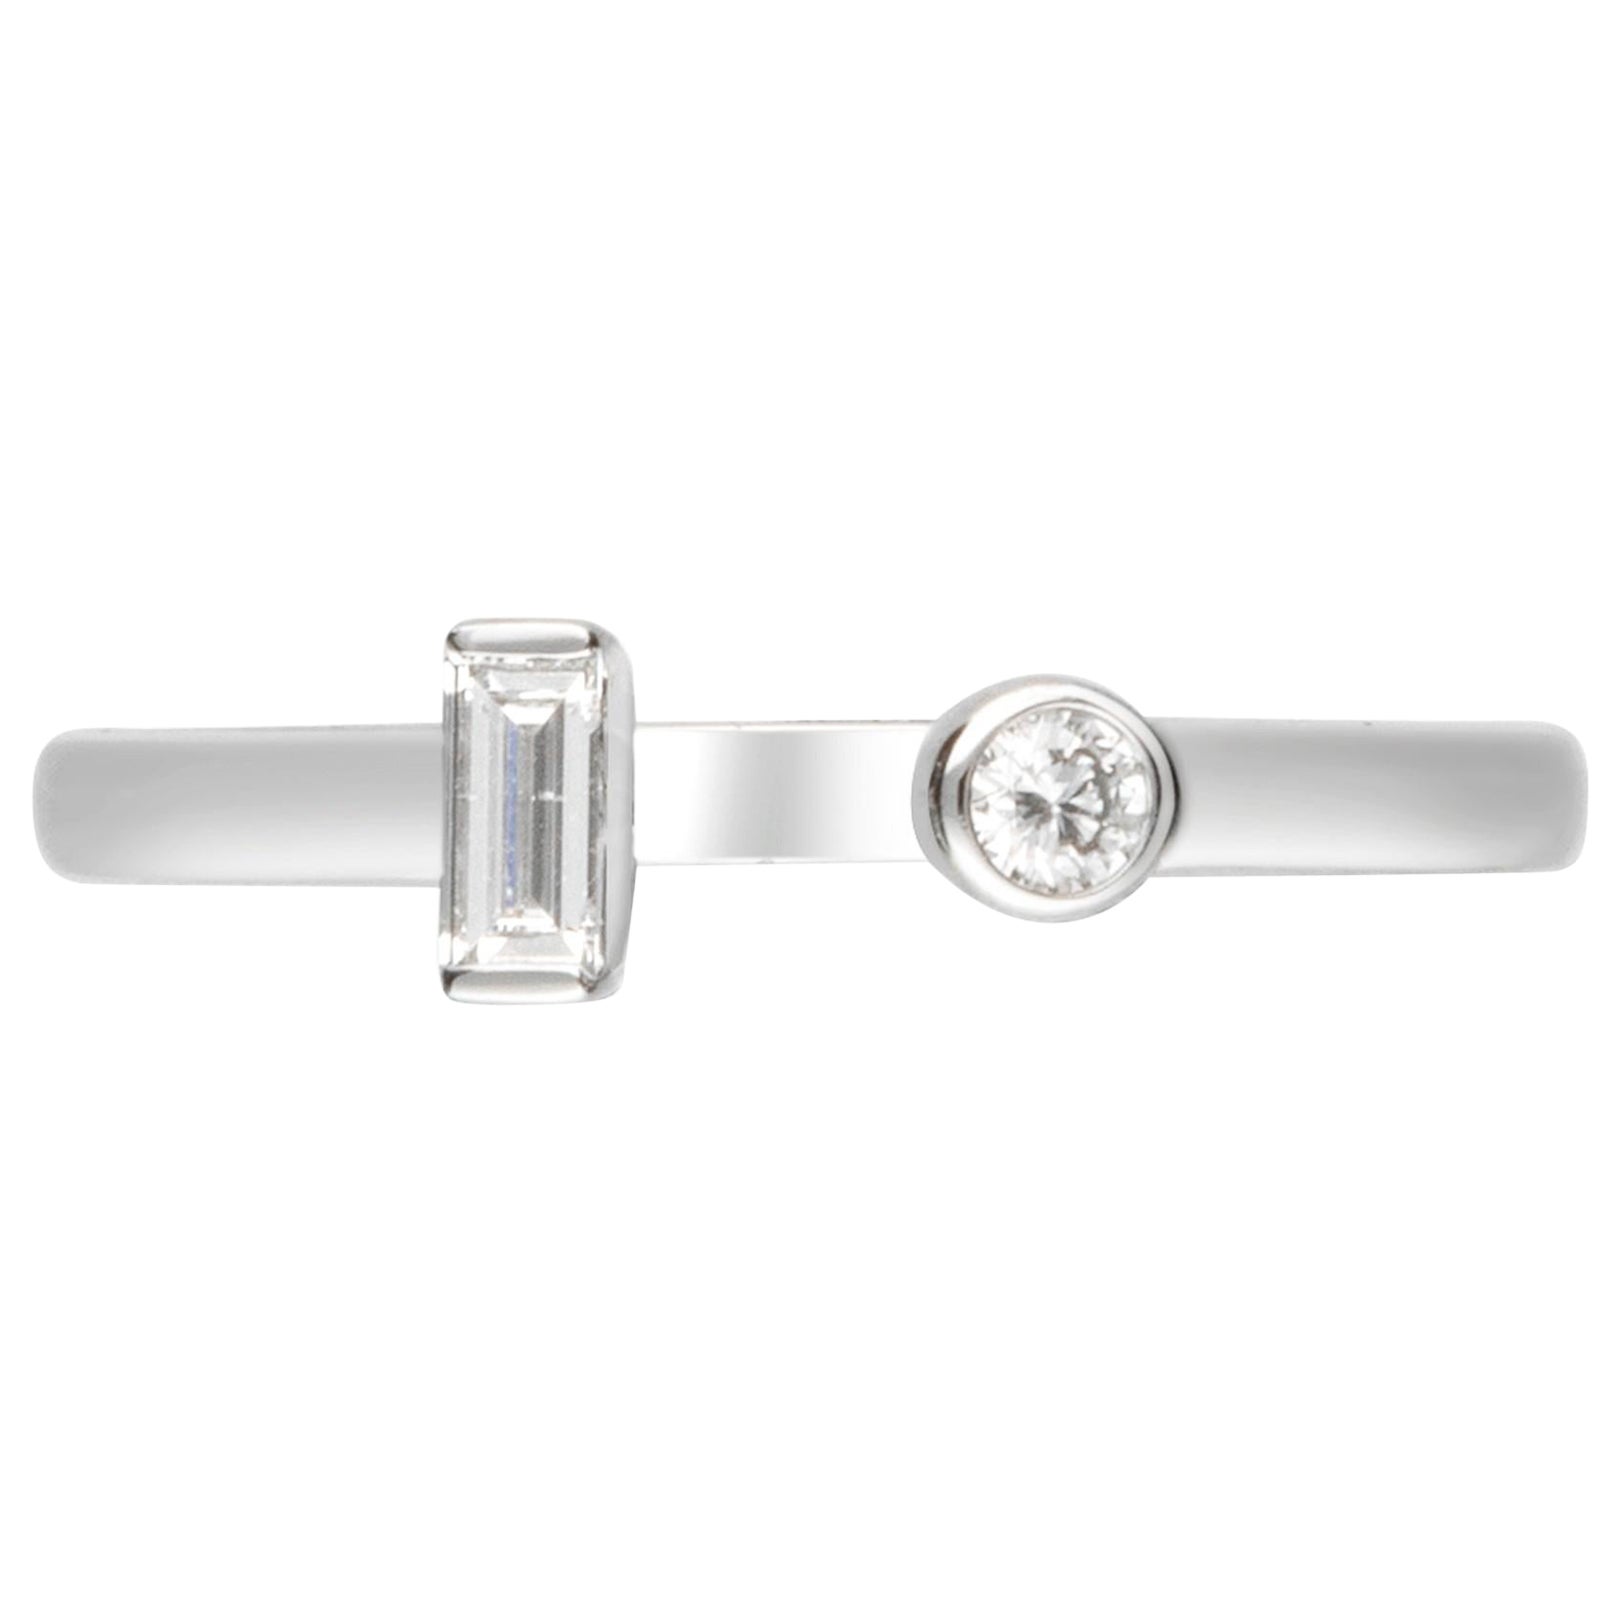 Gin & Grace 18K White Gold Natural Diamond (I1) Ring for Women. For Sale